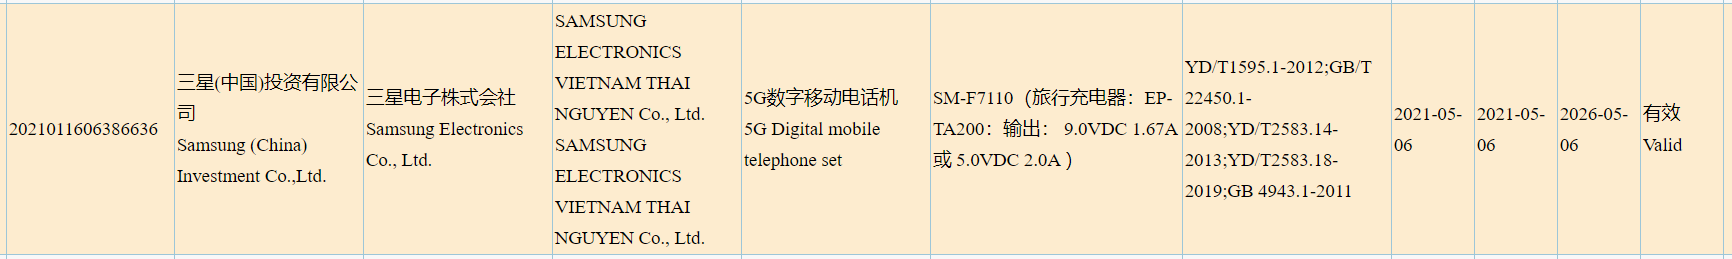 Galaxy Z Flip 3 3C certification